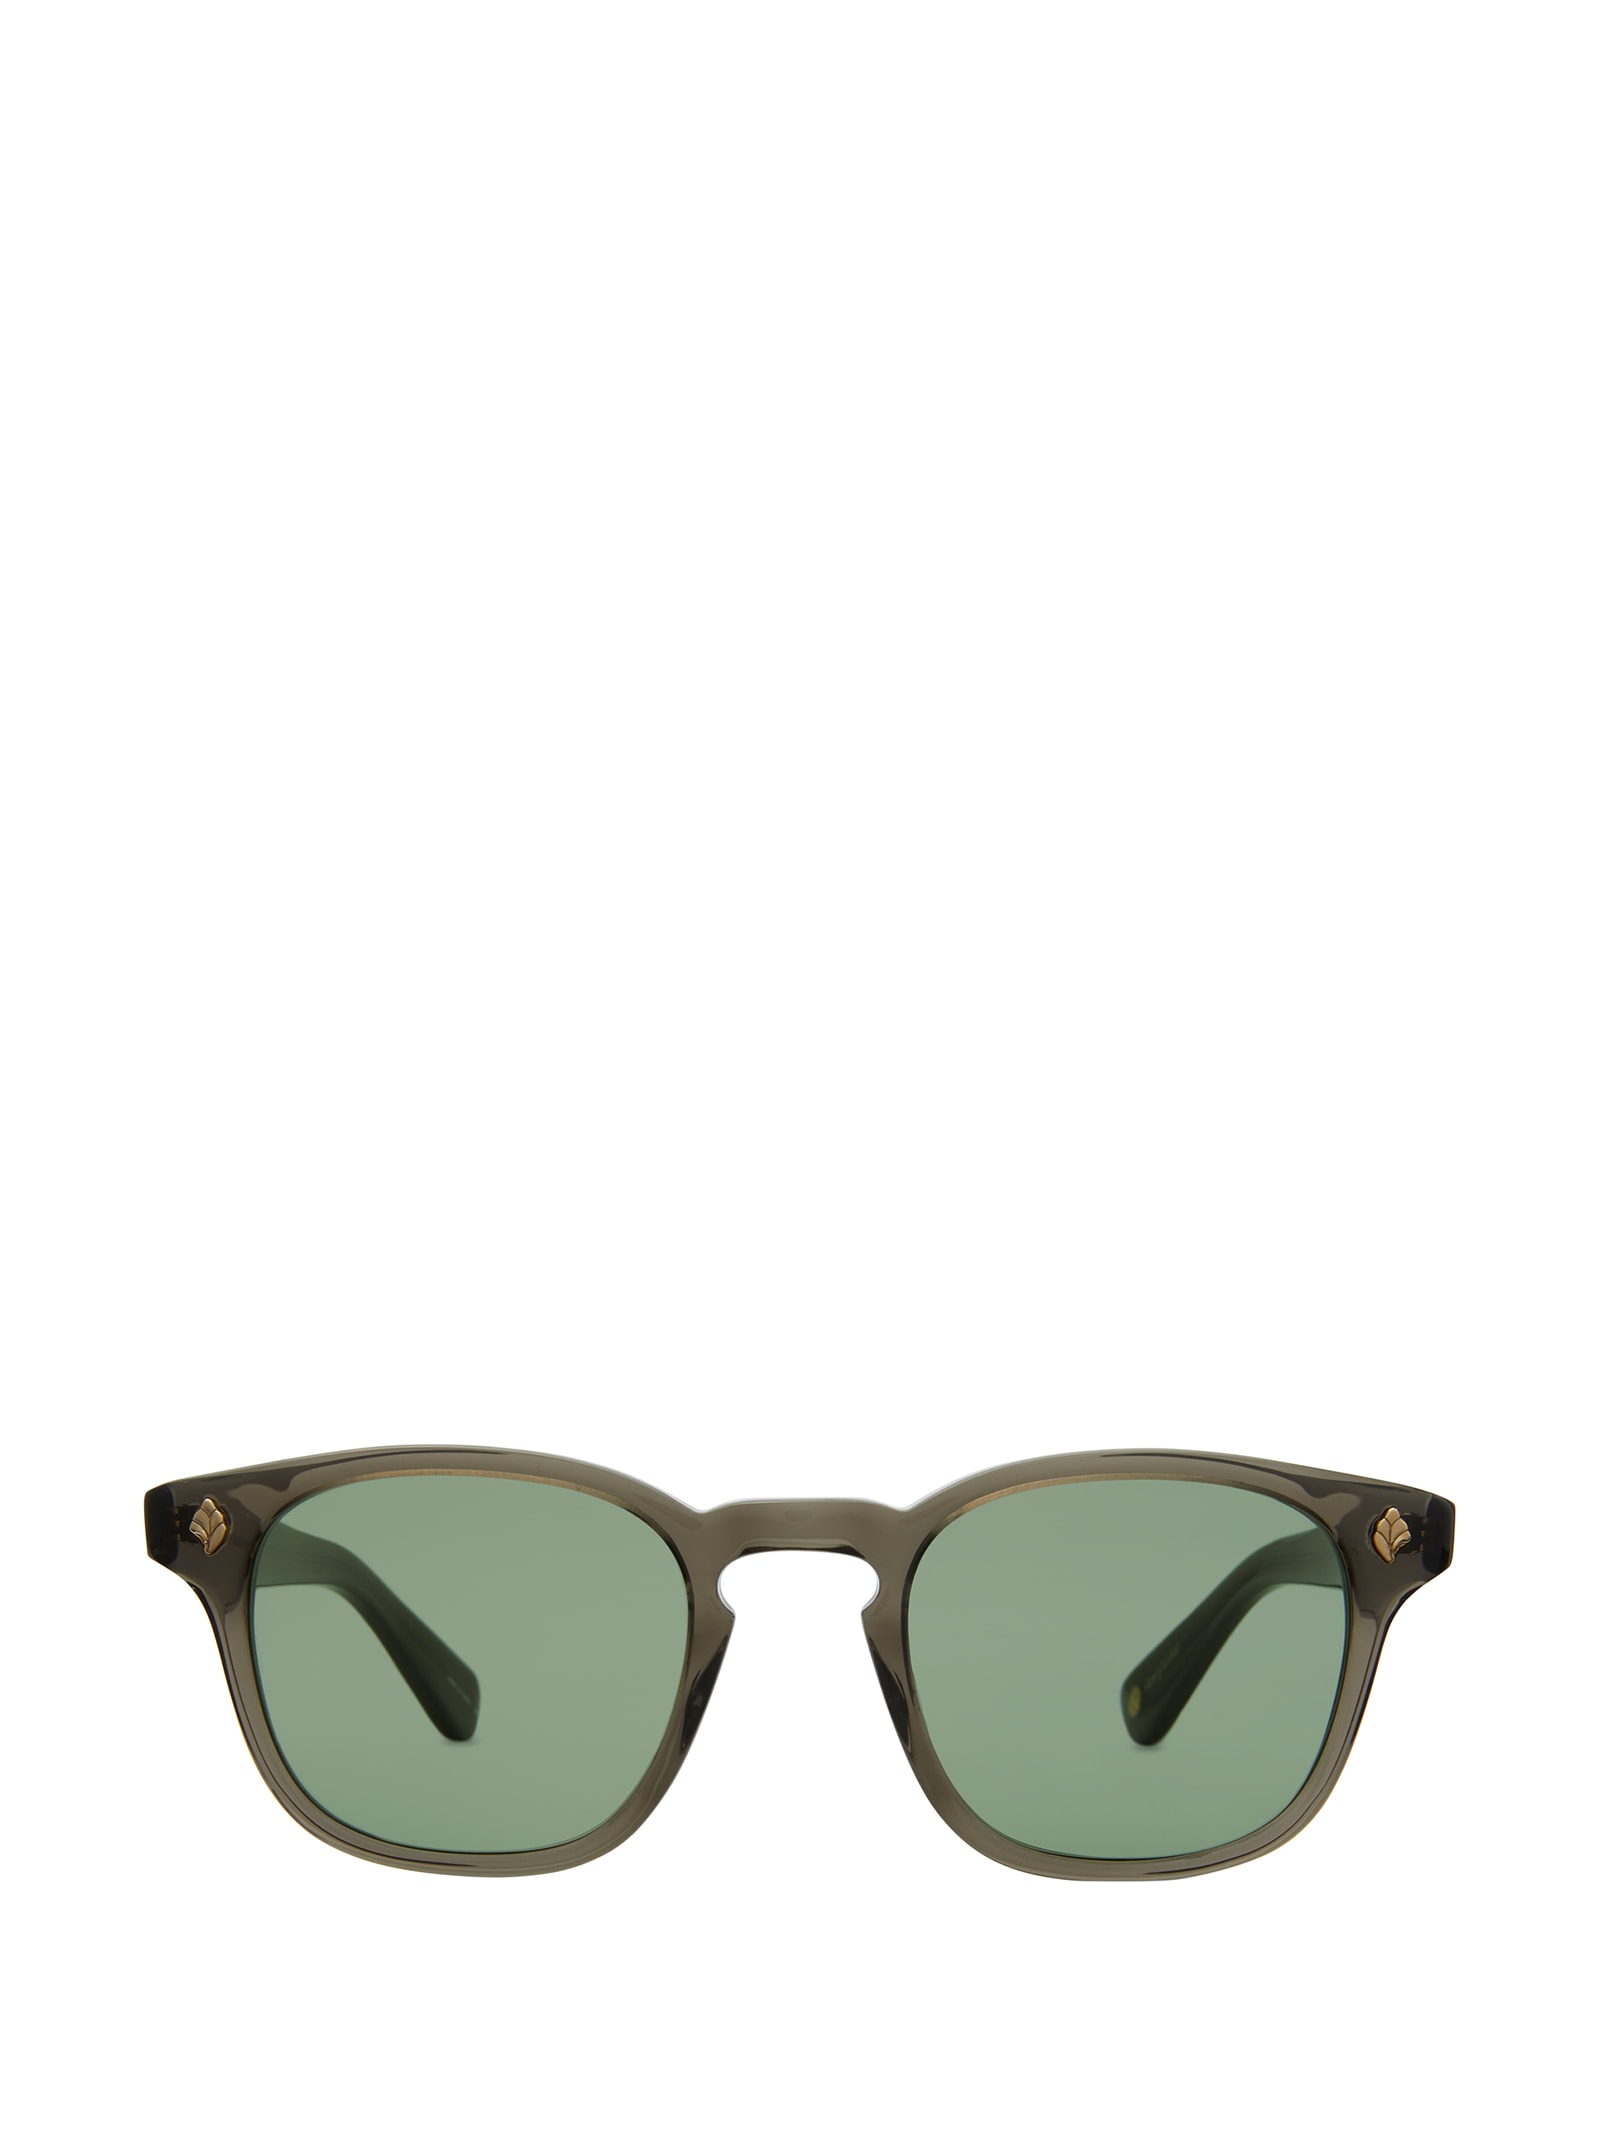 Ace Sun Black Glass Sunglasses